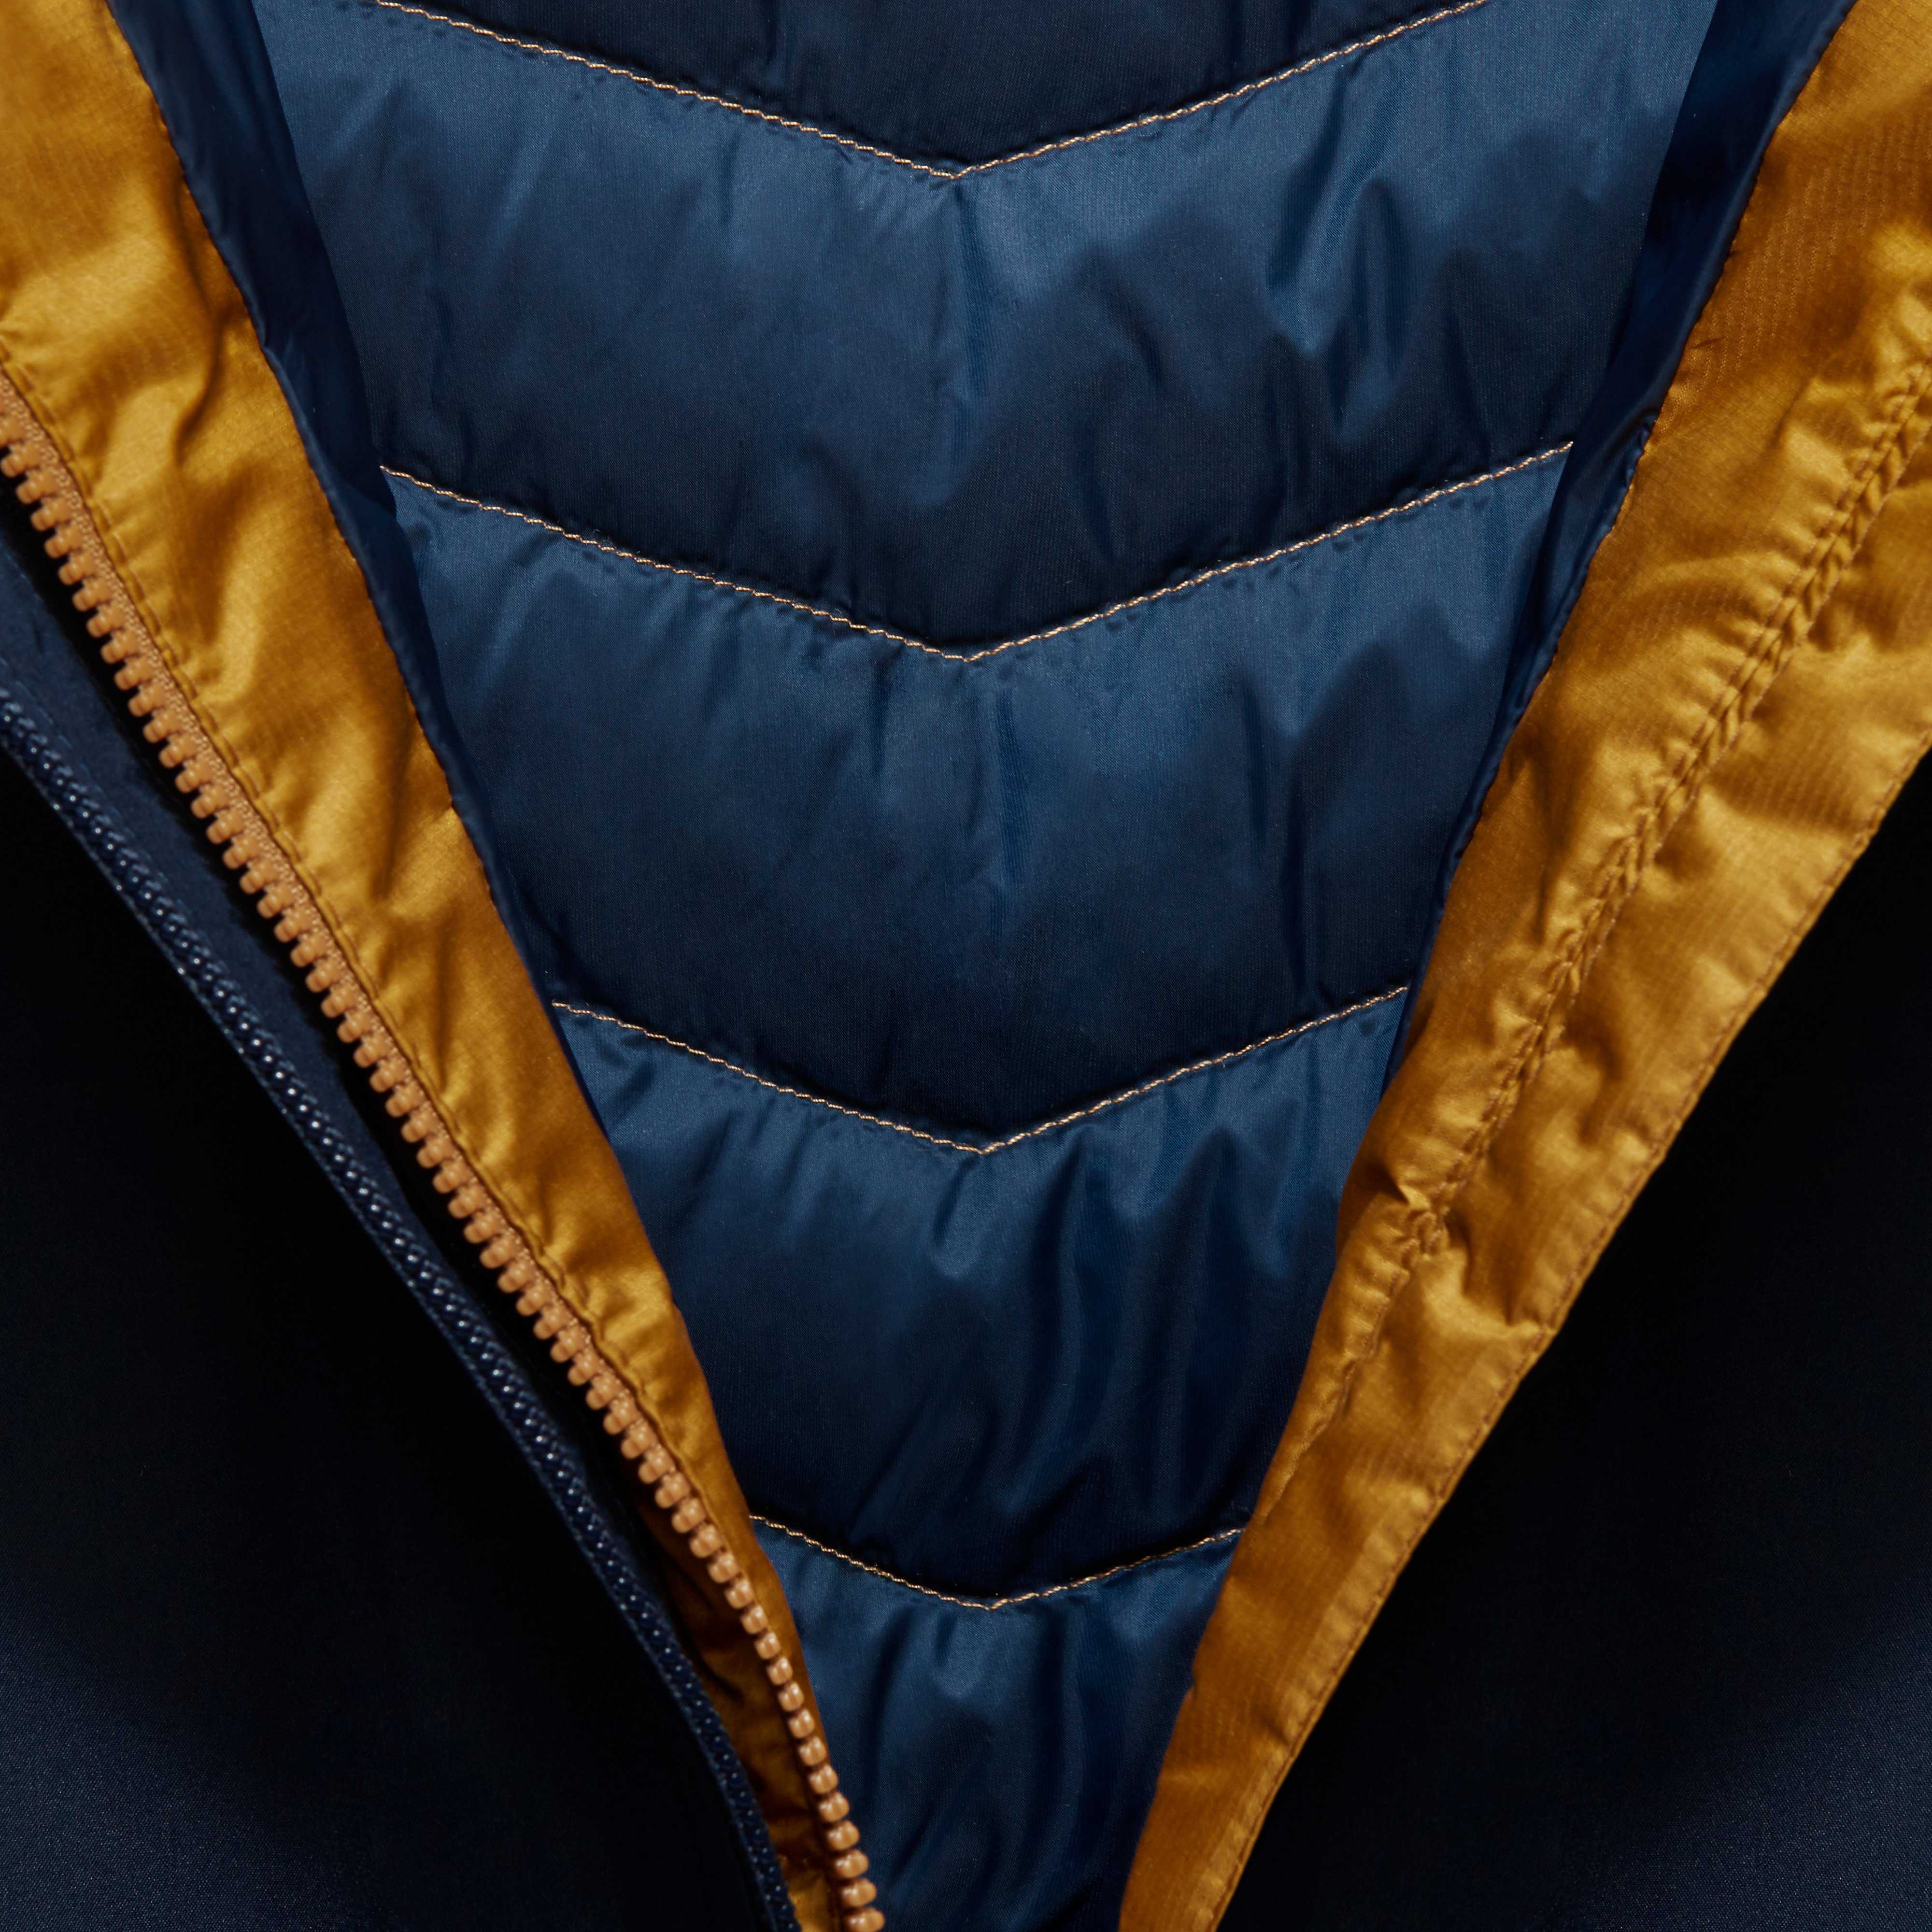 Mammut Convey 3 in 1 HS hooded Jacket Damen Winterjacke Doppeljacke  black-black hier im Winterjacken Online-Shop günstig kaufen